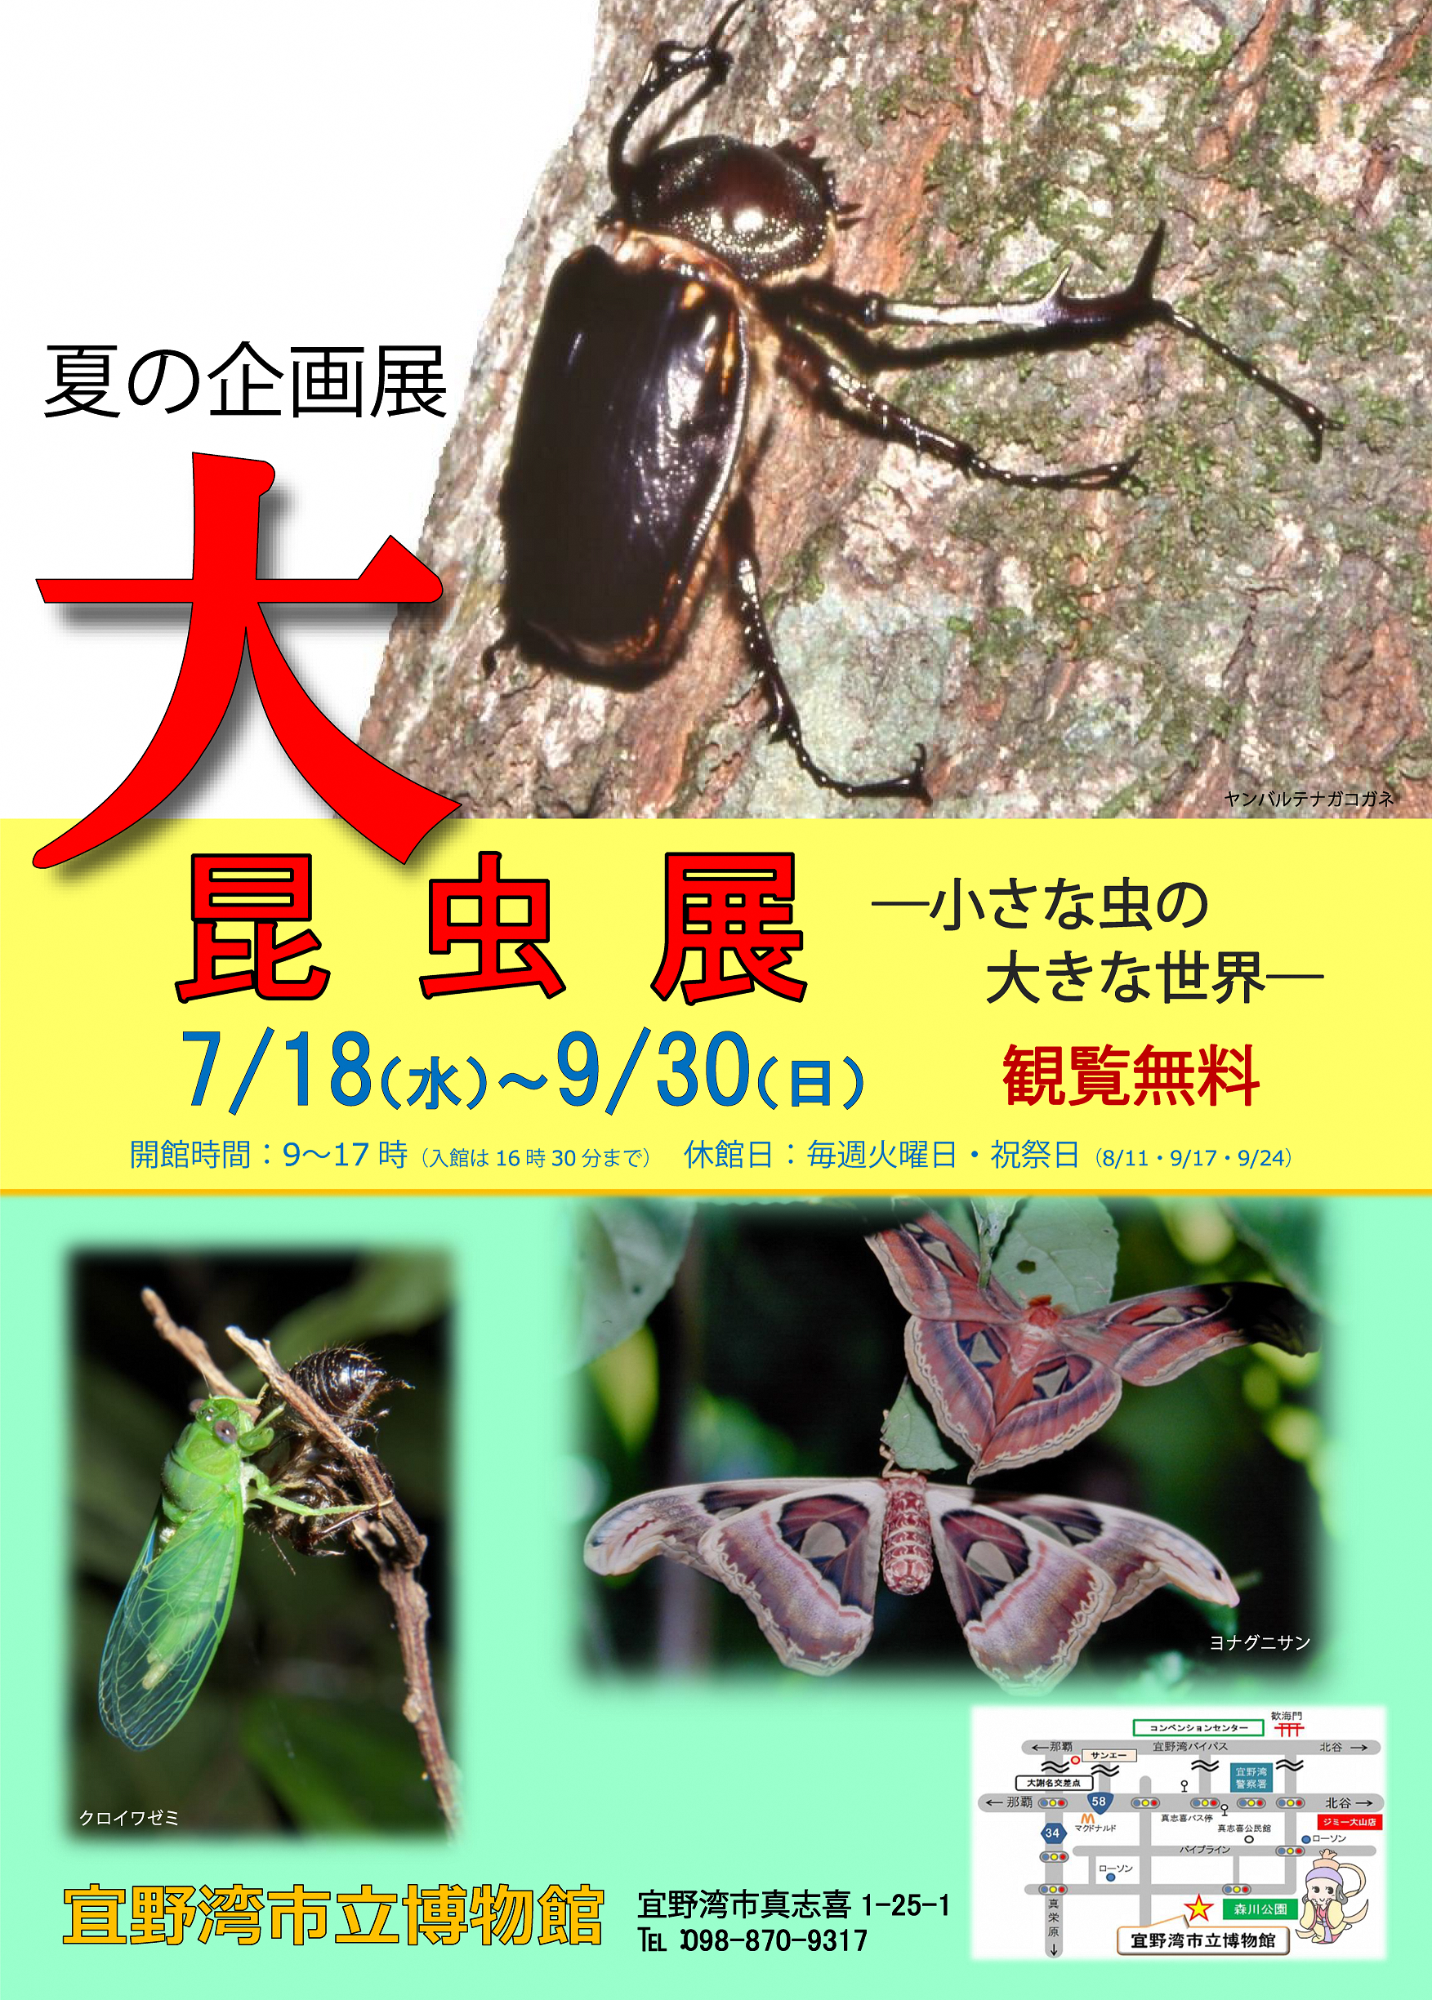 大昆虫展のポスター